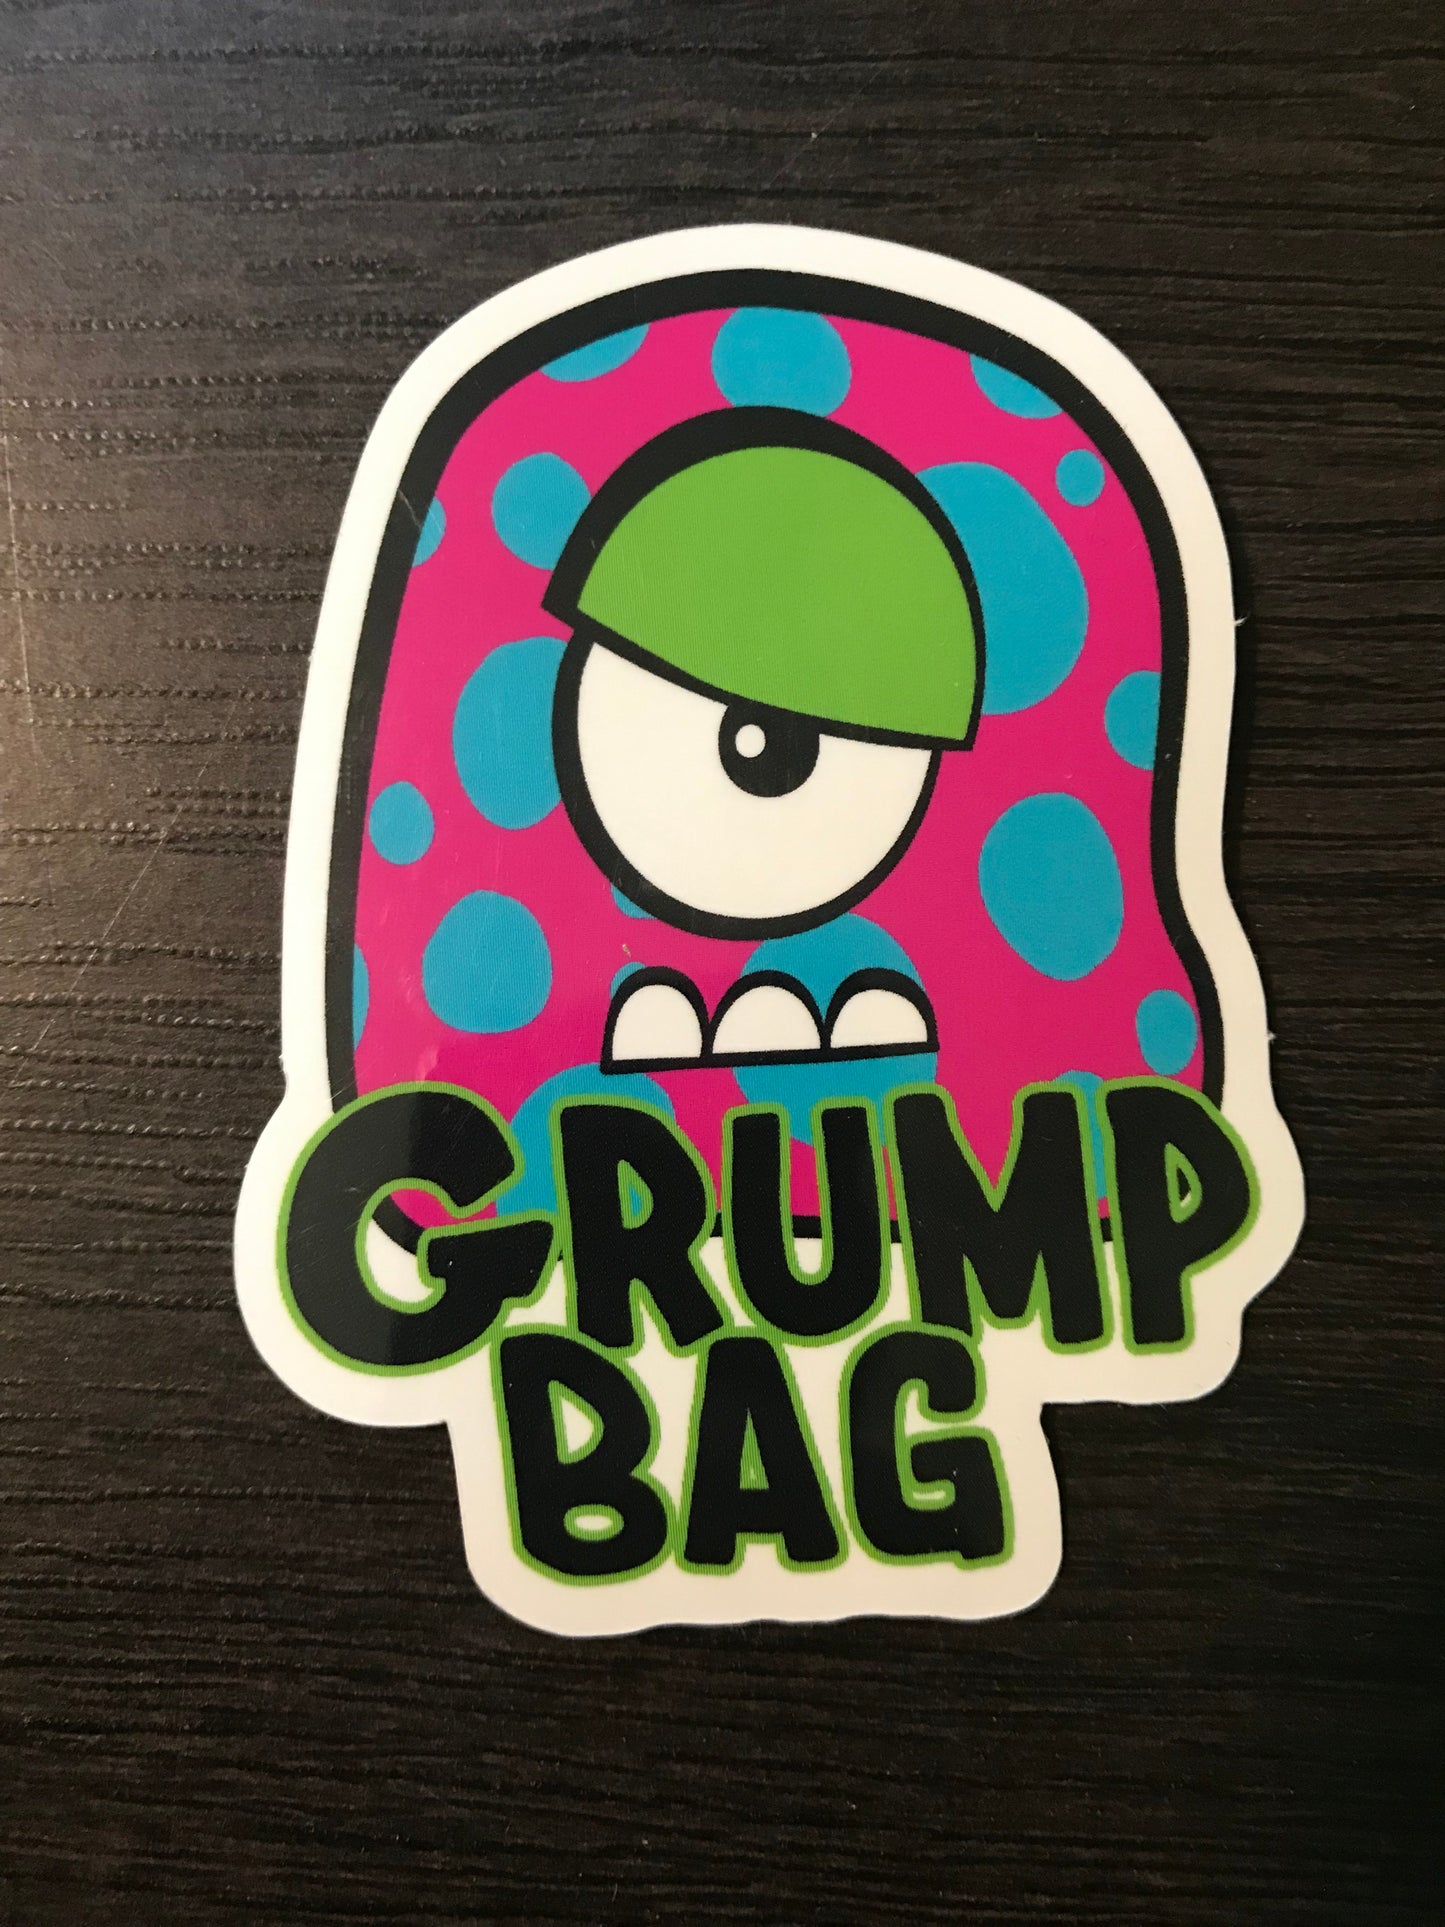 Grump Bag Sticker - Vinyl